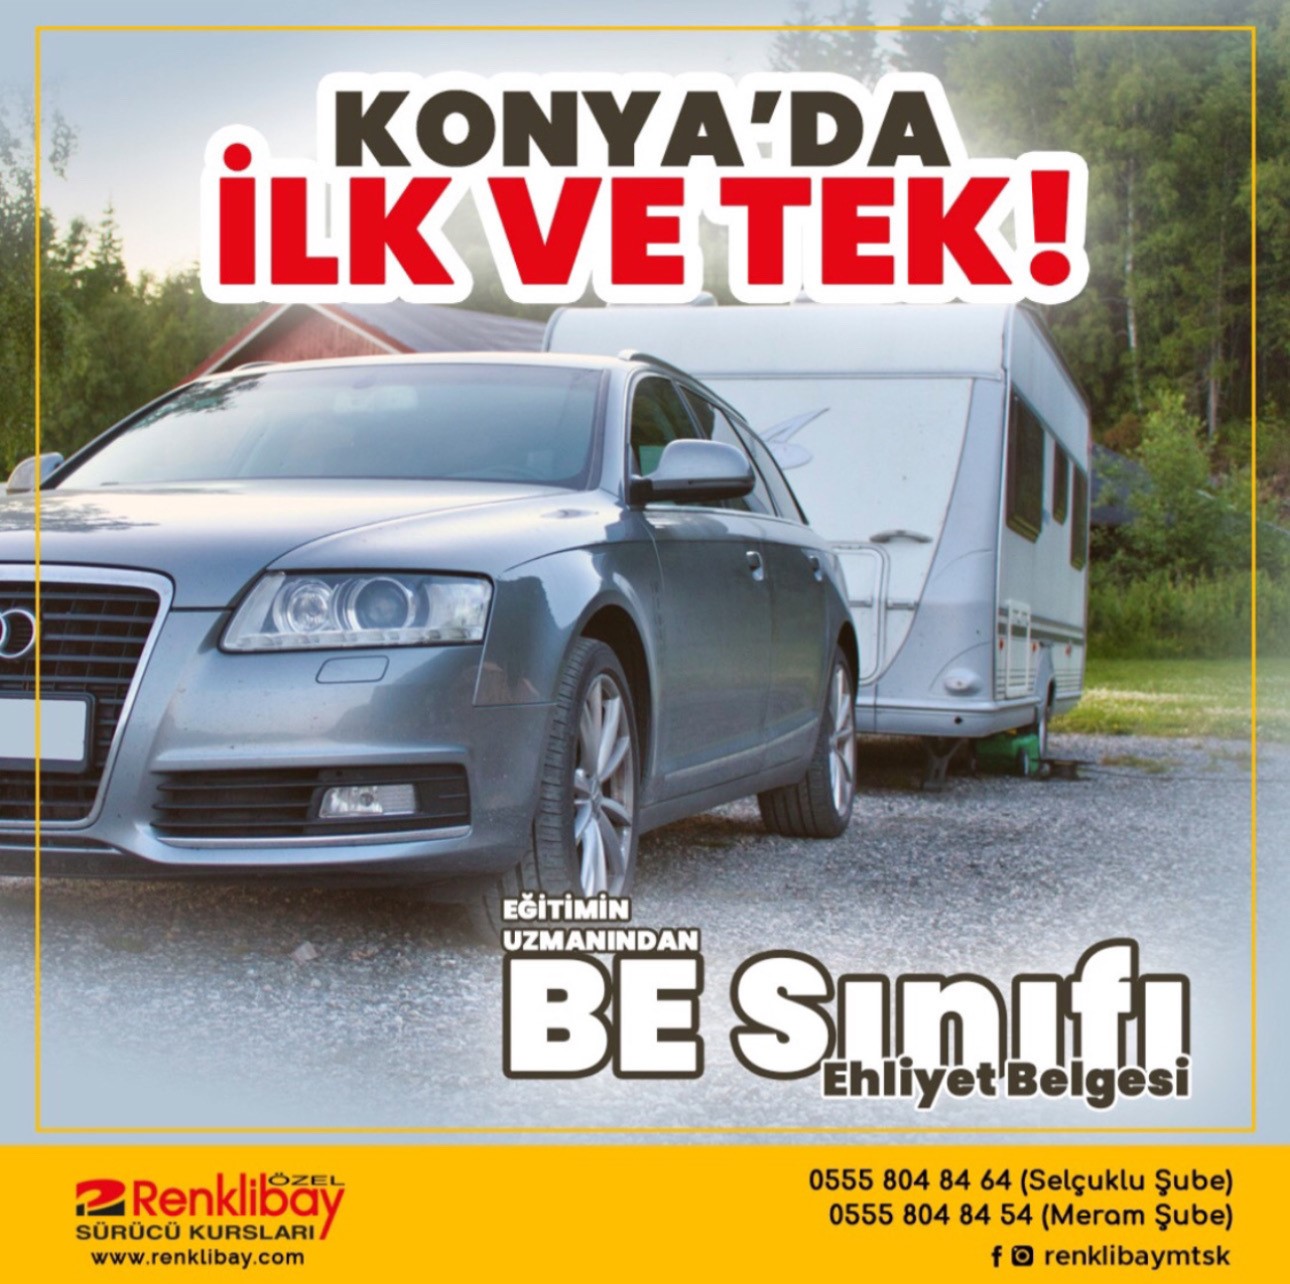 Konya'da BE Sınıfı Karavan Sürücü Belgesi Veren Tek Sürücü Kursu...